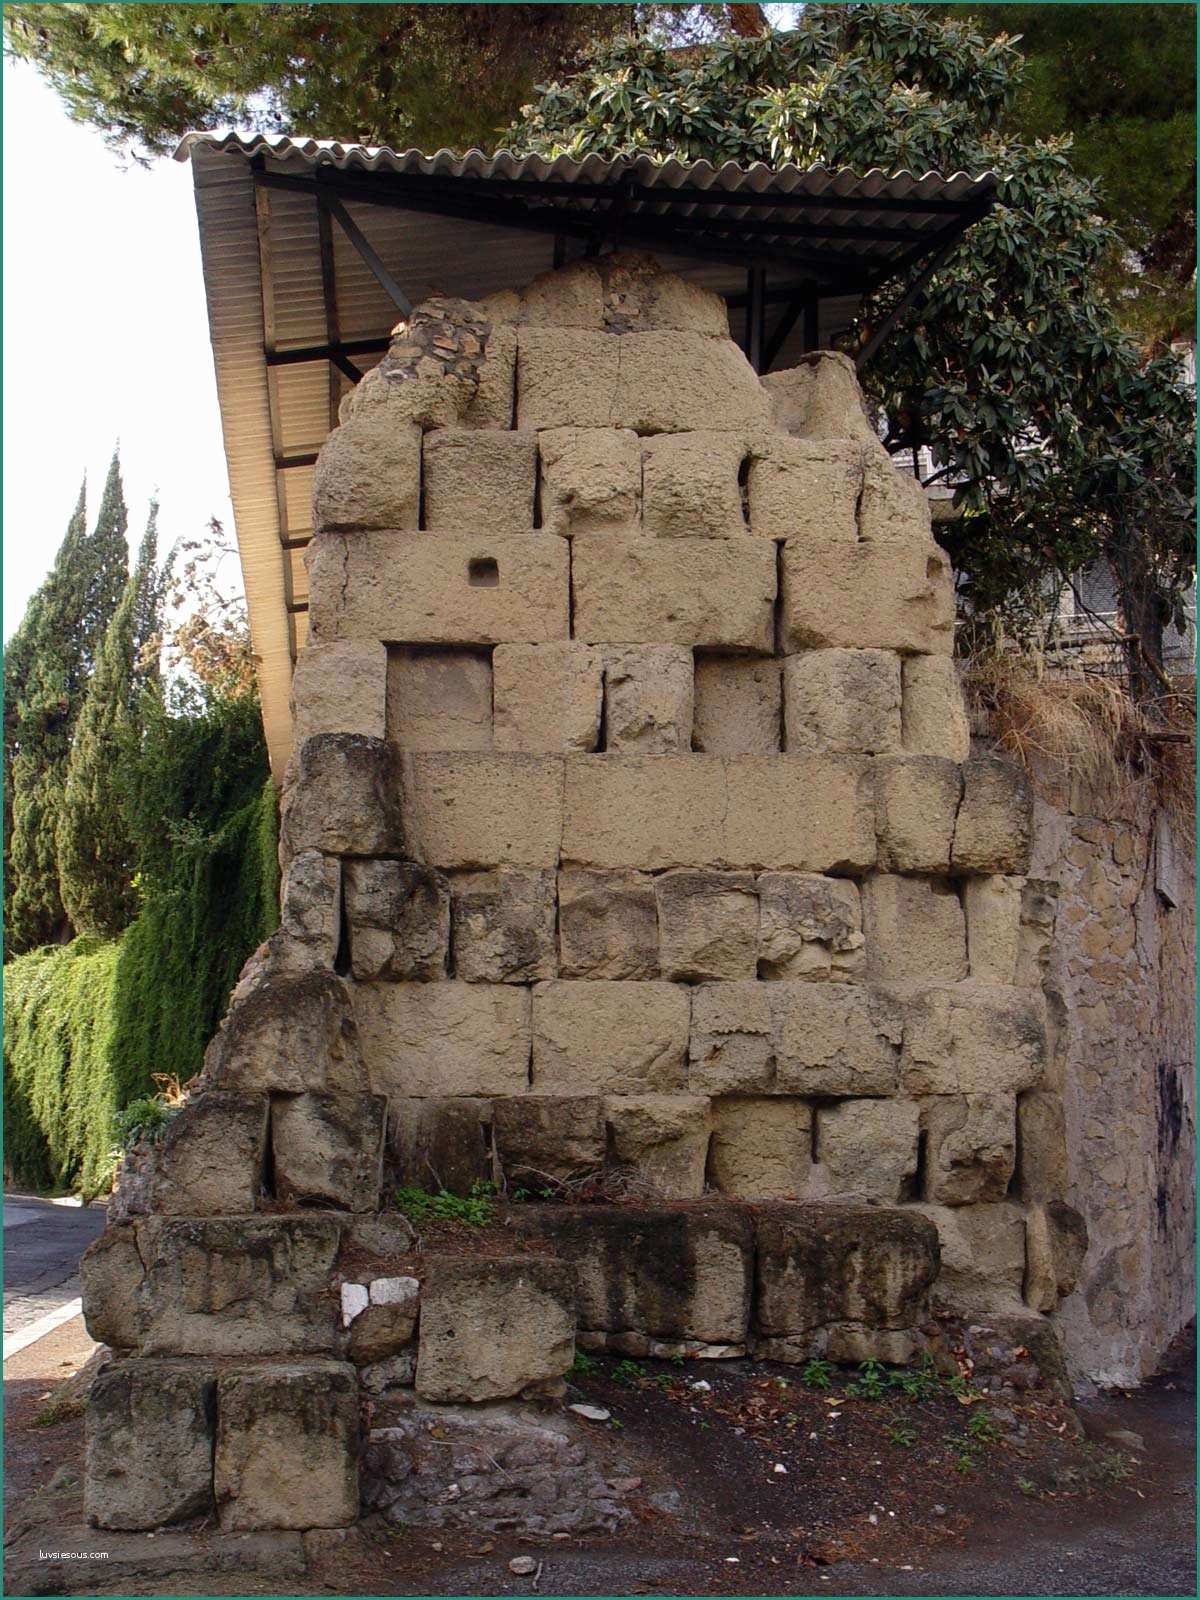 Muri A Secco Prefabbricati Prezzi E I Materiali Da Costruzione Dell Antica Roma